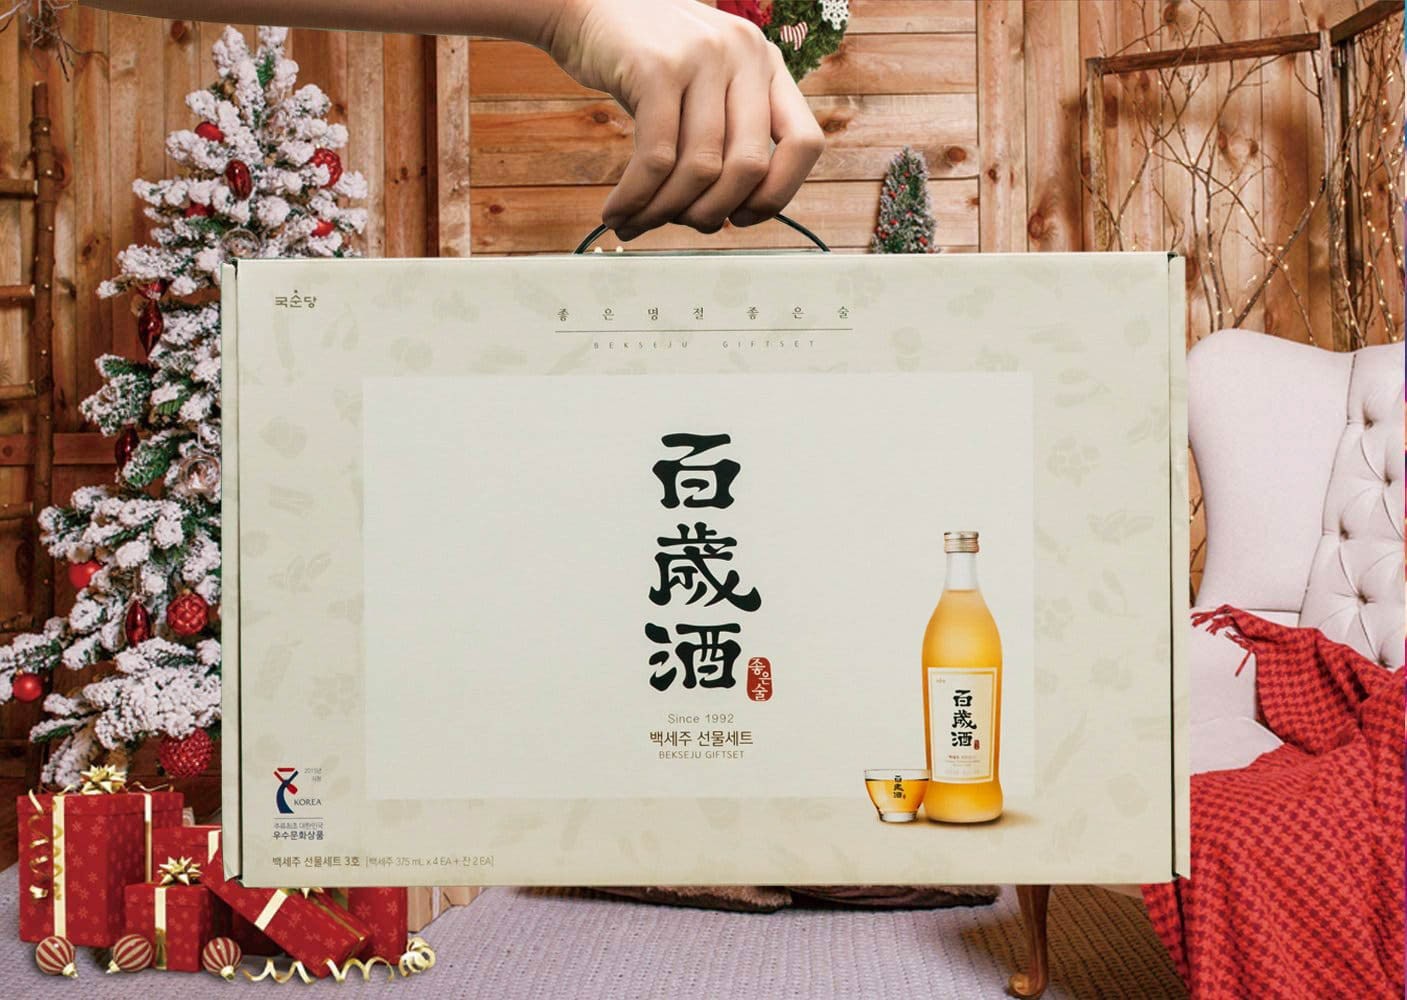 Rượu Bekseju, rượu Hàn Quốc được ngâm ủ từ thảo mộc